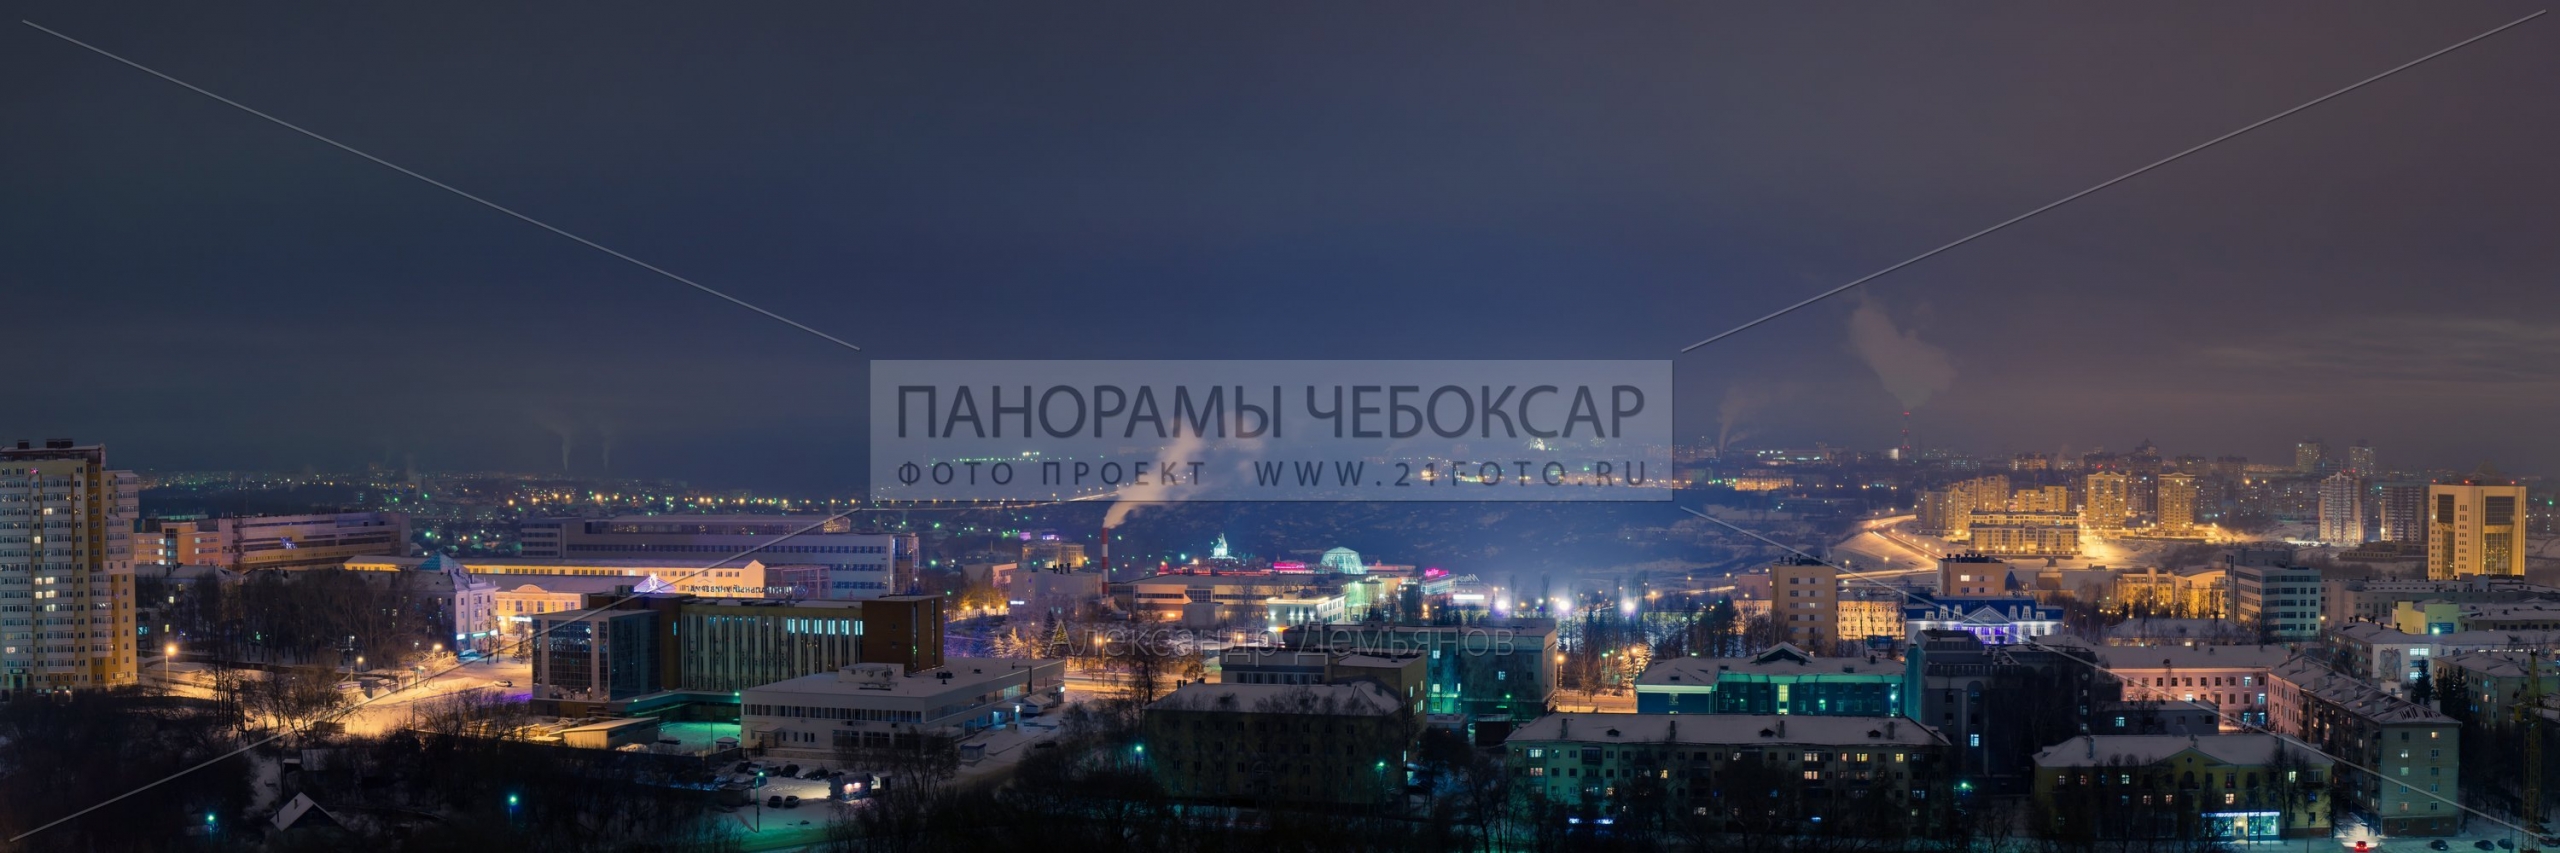 Центр города чебоксары зимой в облачную погоду